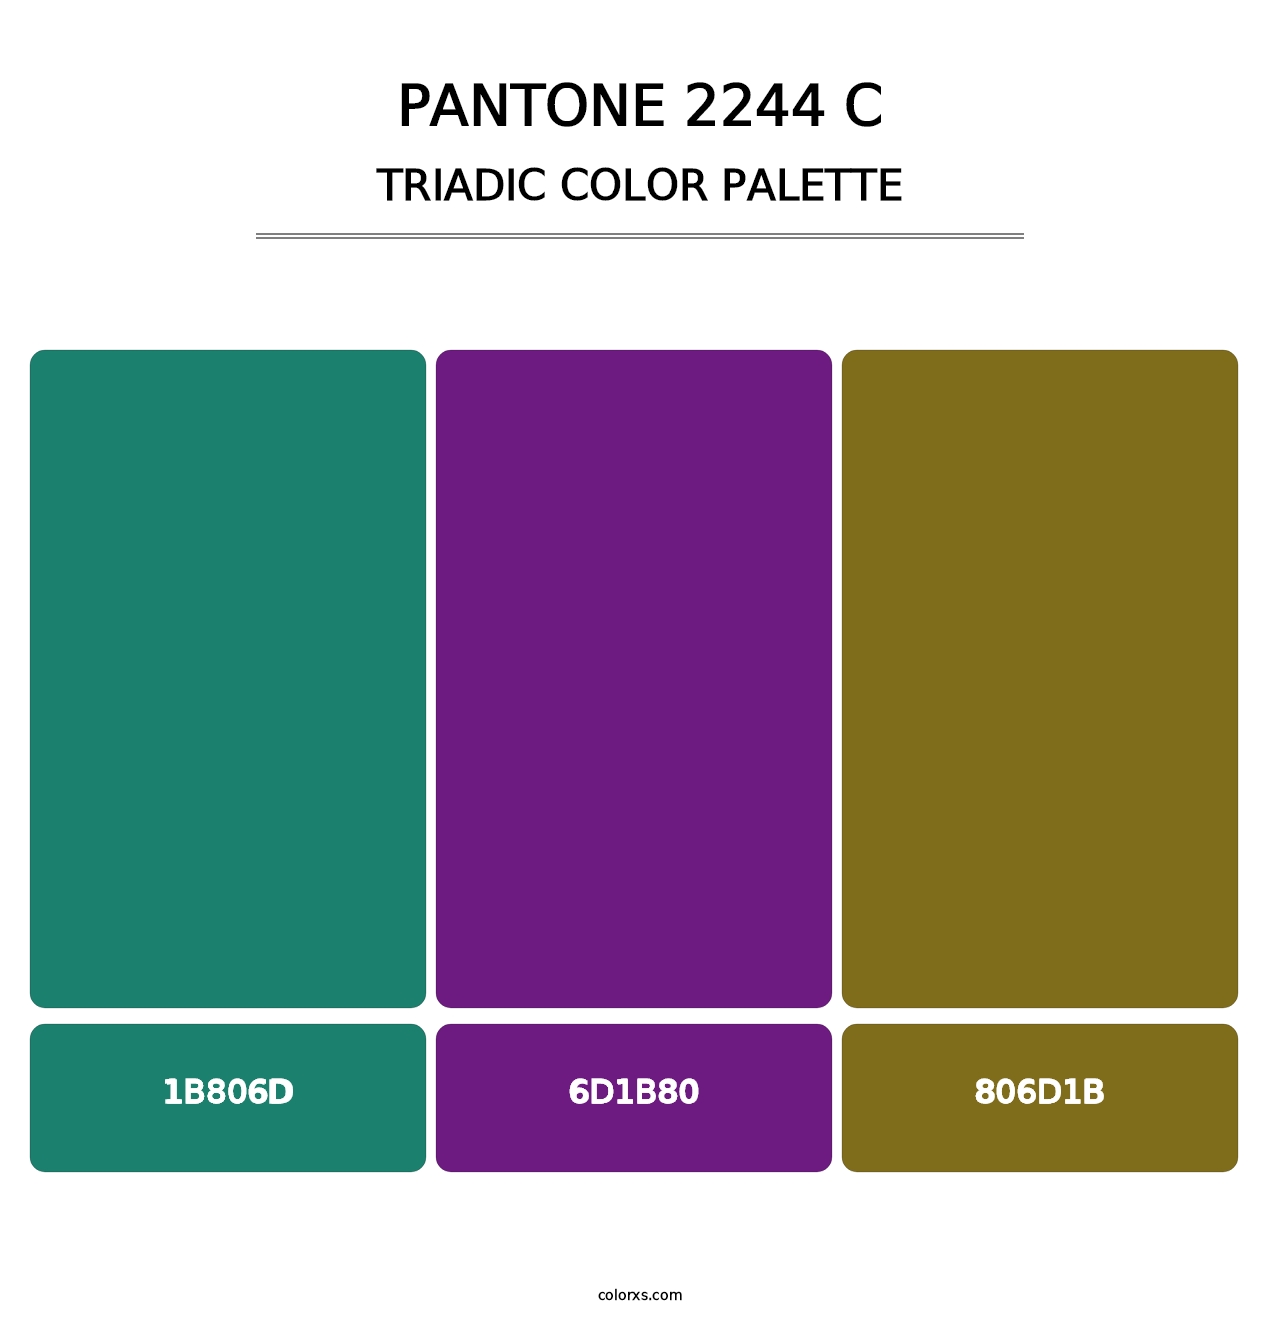 PANTONE 2244 C - Triadic Color Palette